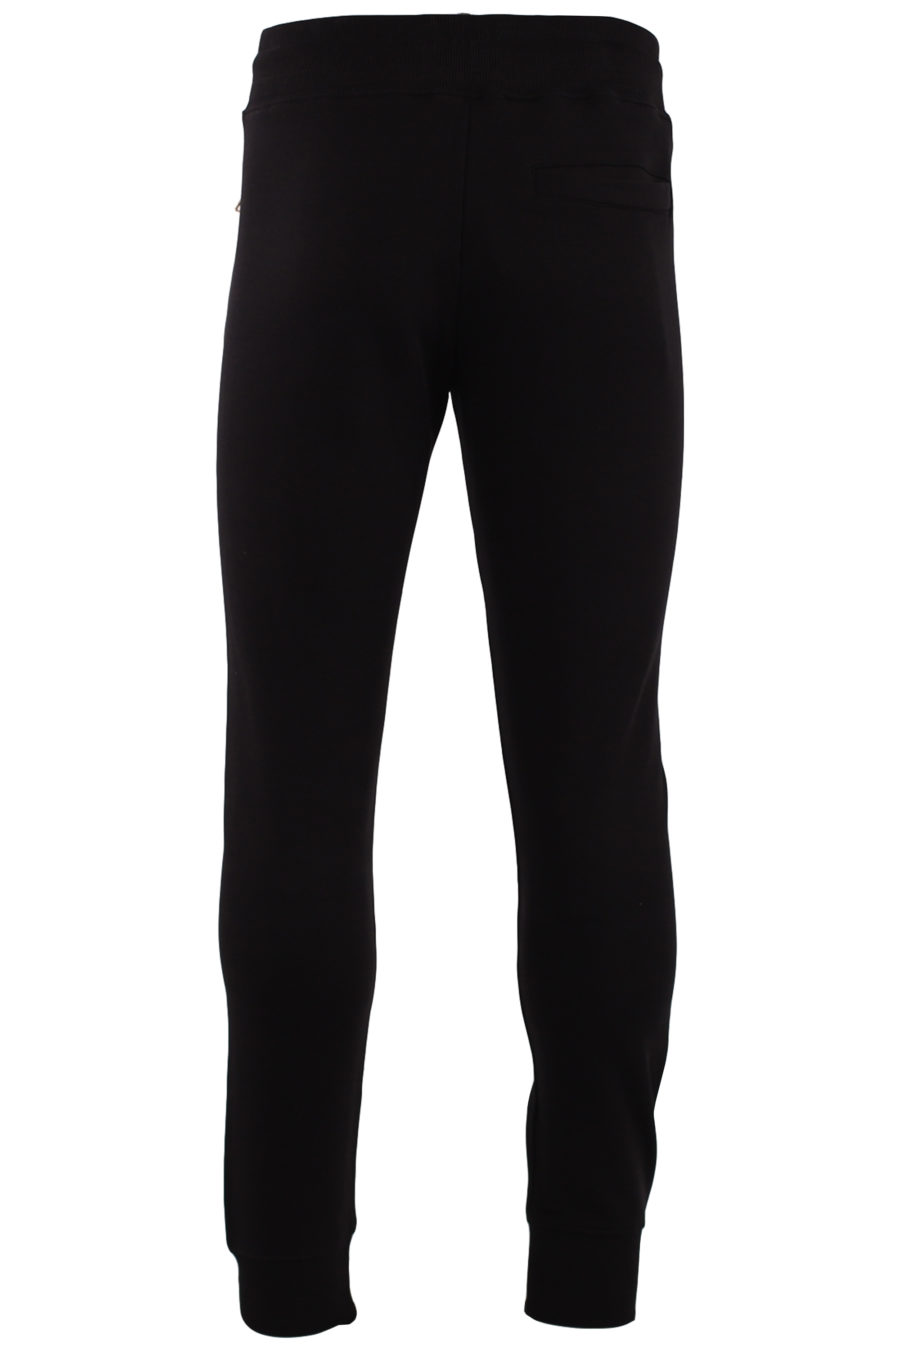 Pantalón de chándal negro con logo bordado - IMG 9444